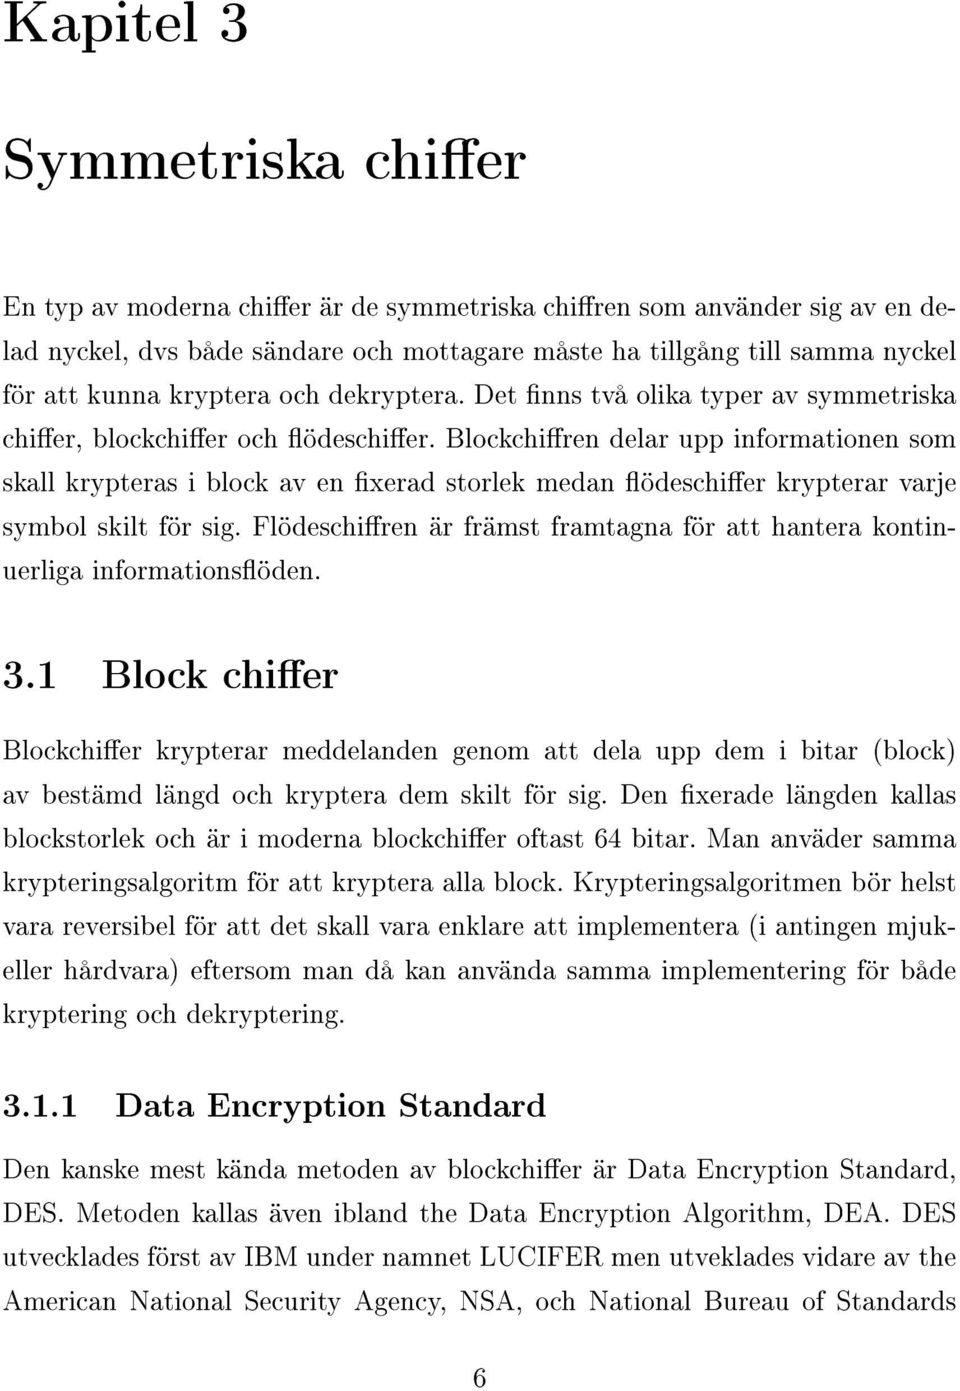 Blockchiren delar upp informationen som skall krypteras i block av en xerad storlek medan ödeschier krypterar varje symbol skilt för sig.